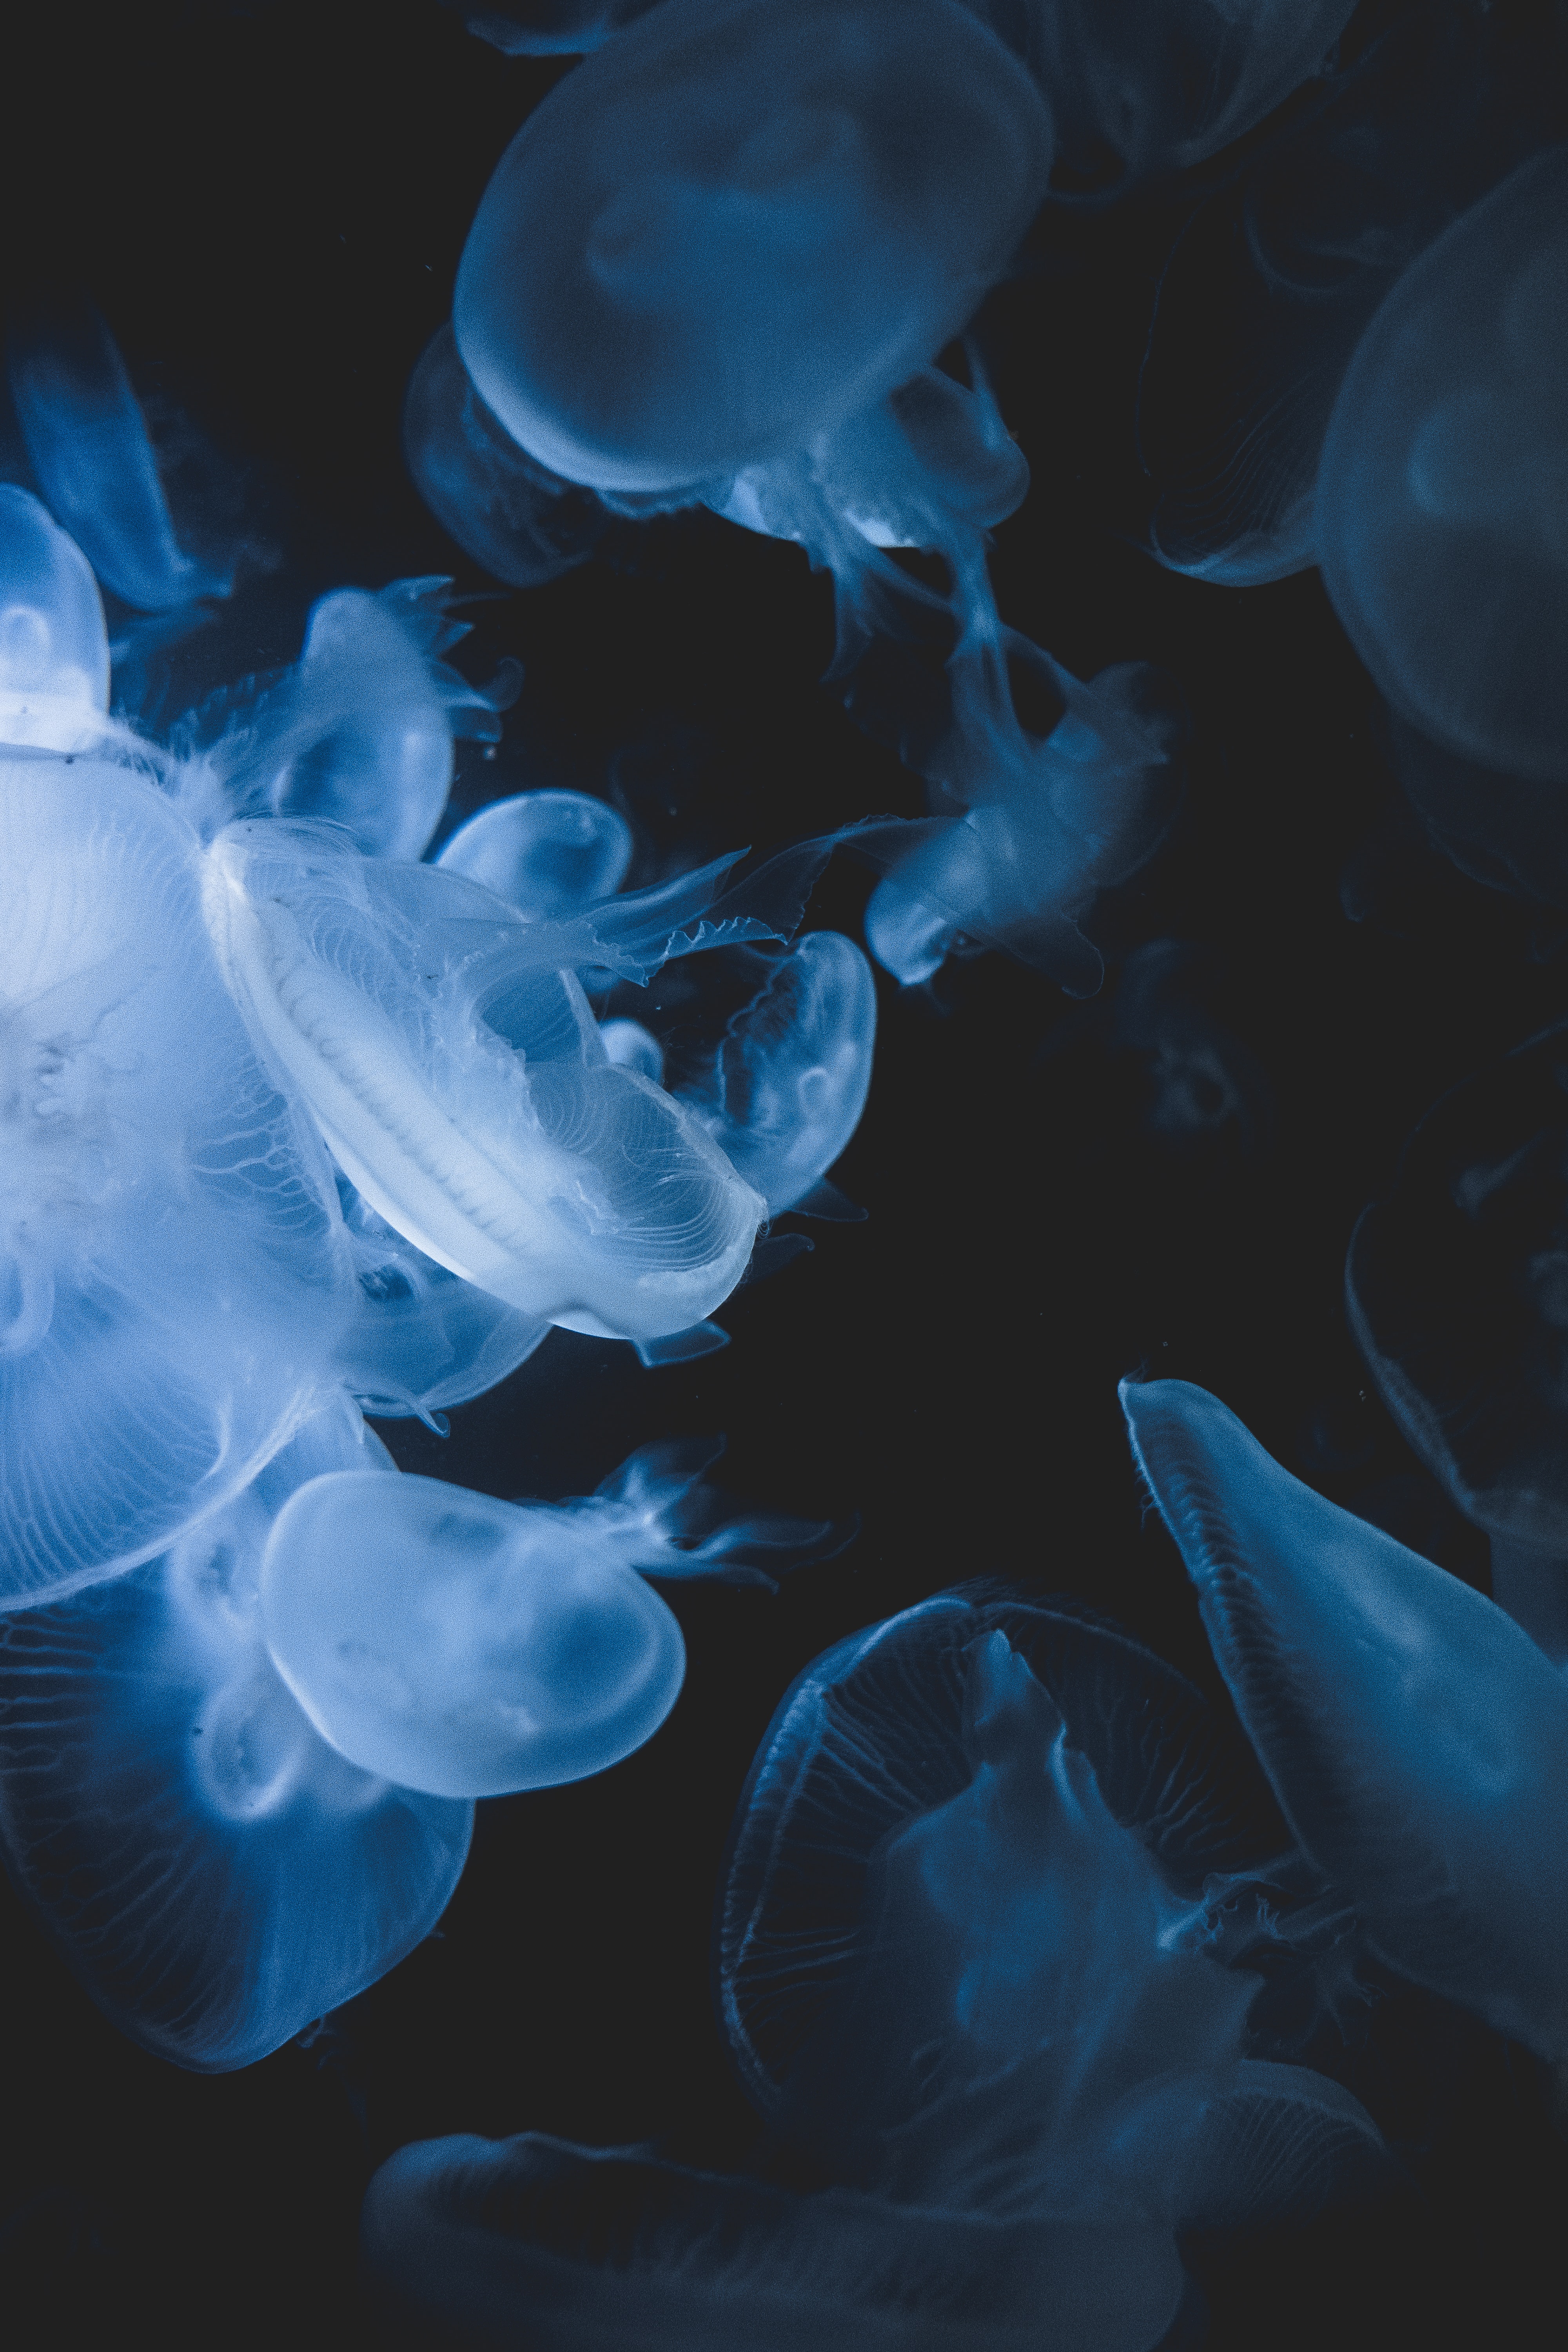 jellyfish, animals, blue, transparent, creatures, under water, underwater